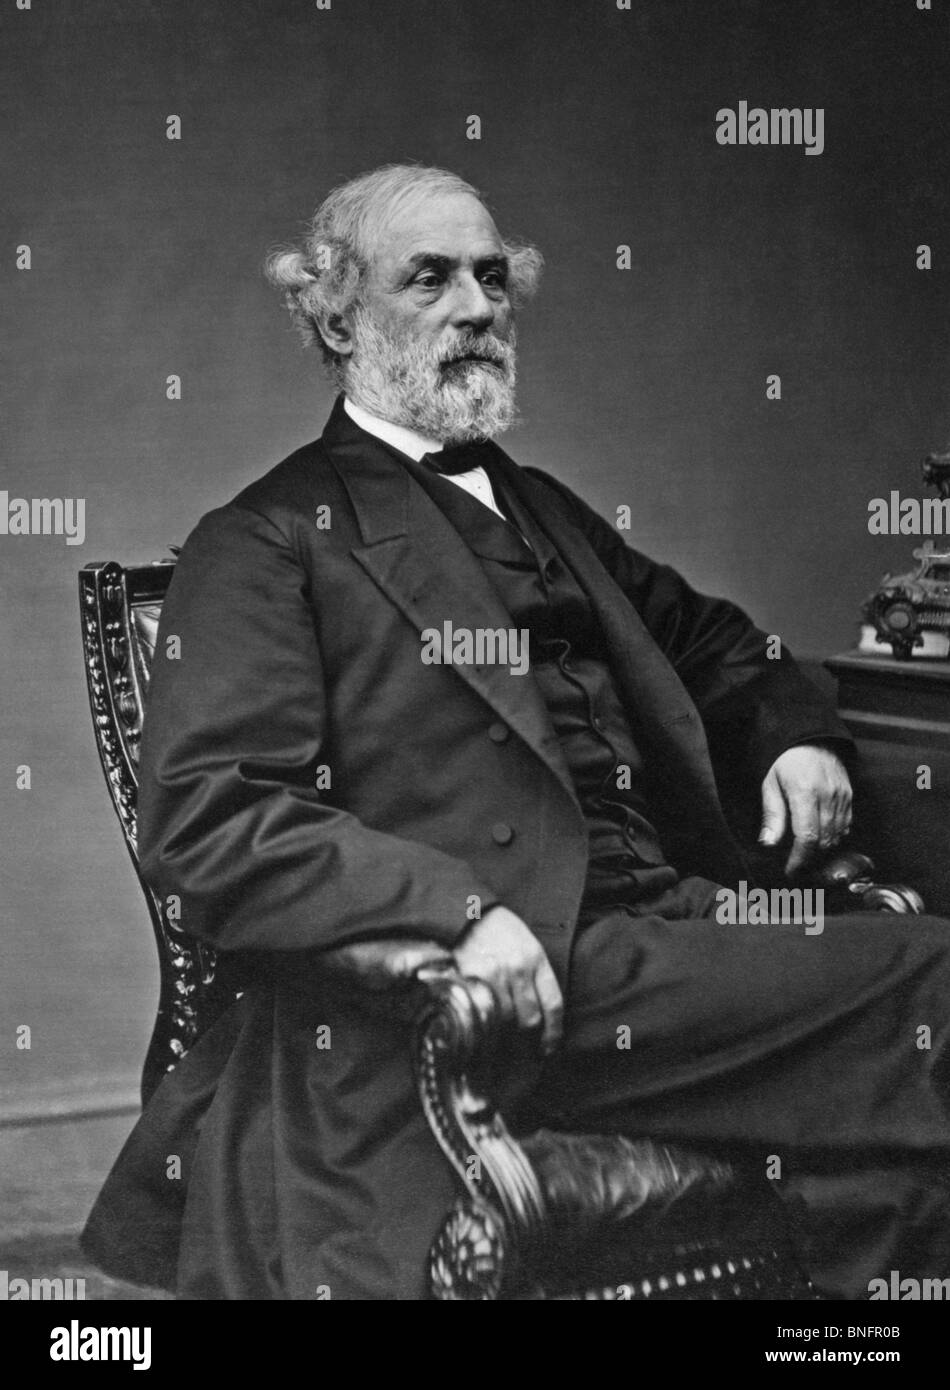 Portrait photo datant de la fin des années 1860, du général Robert E Lee (1807 - 1870) - commandant confédéré iconique dans la guerre civile américaine. Banque D'Images